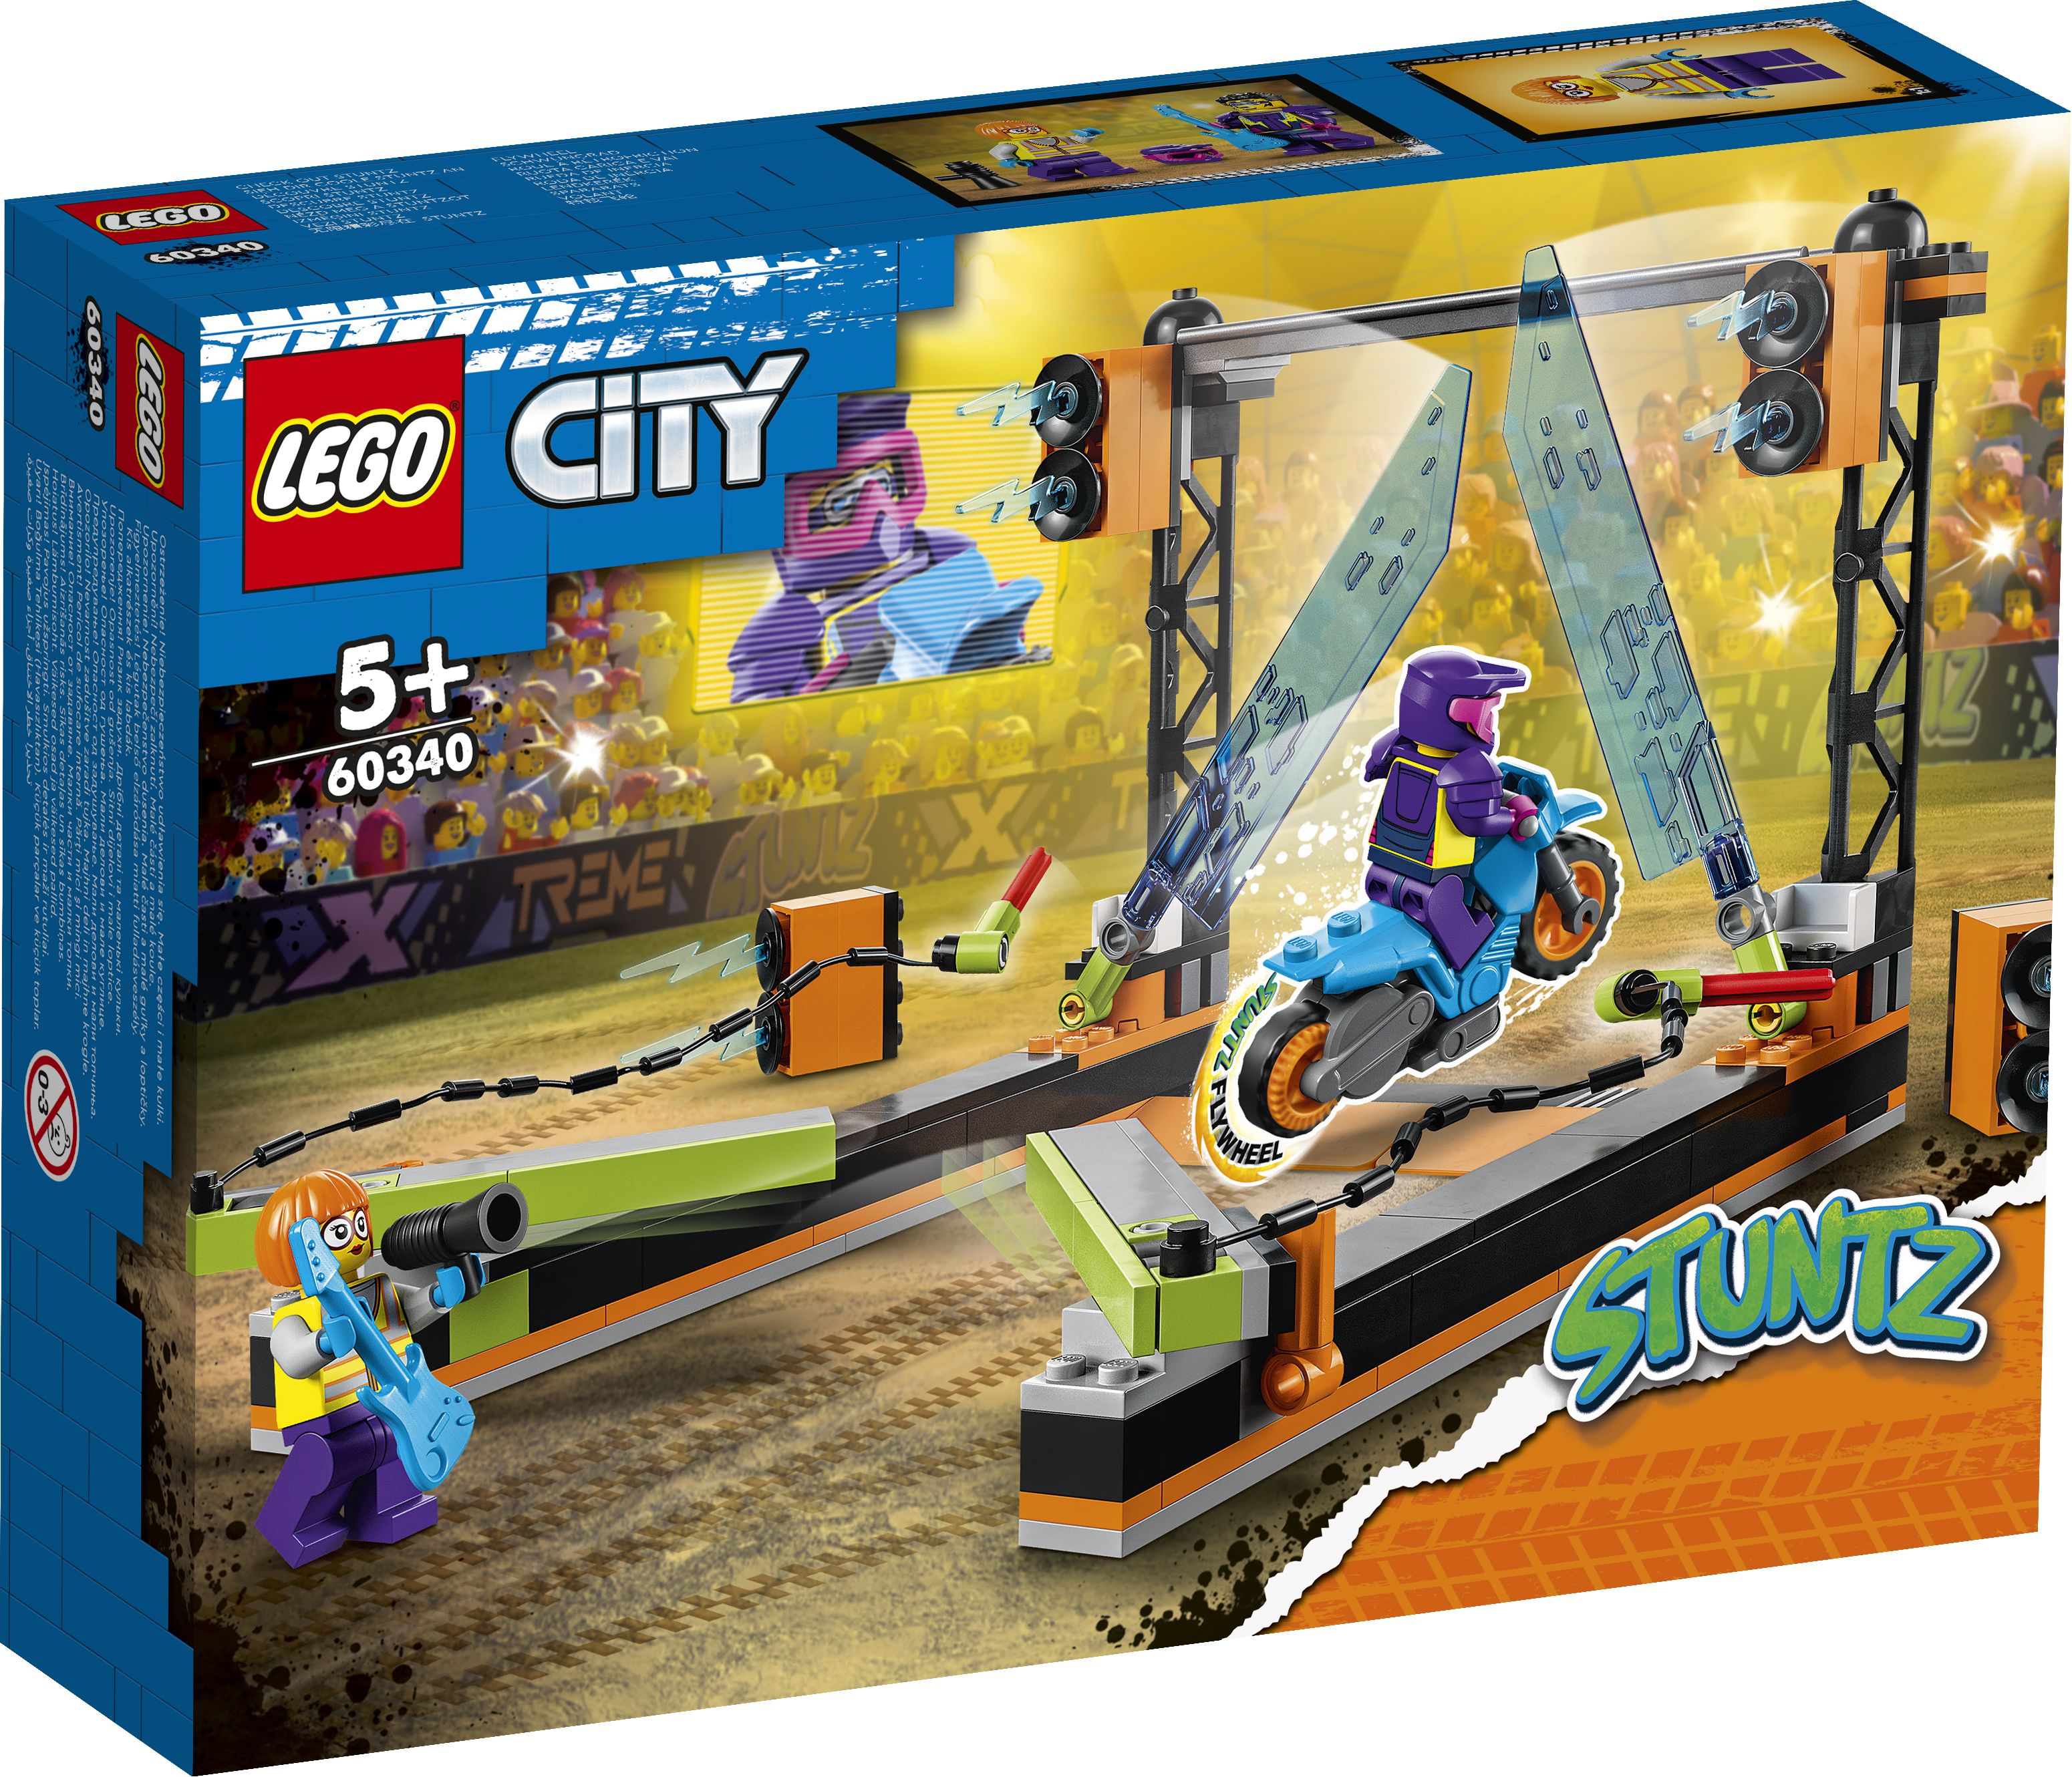 LEGO City 60340 Hindernis-Stuntchallenge LEGO_60340_Box1_v29.jpg